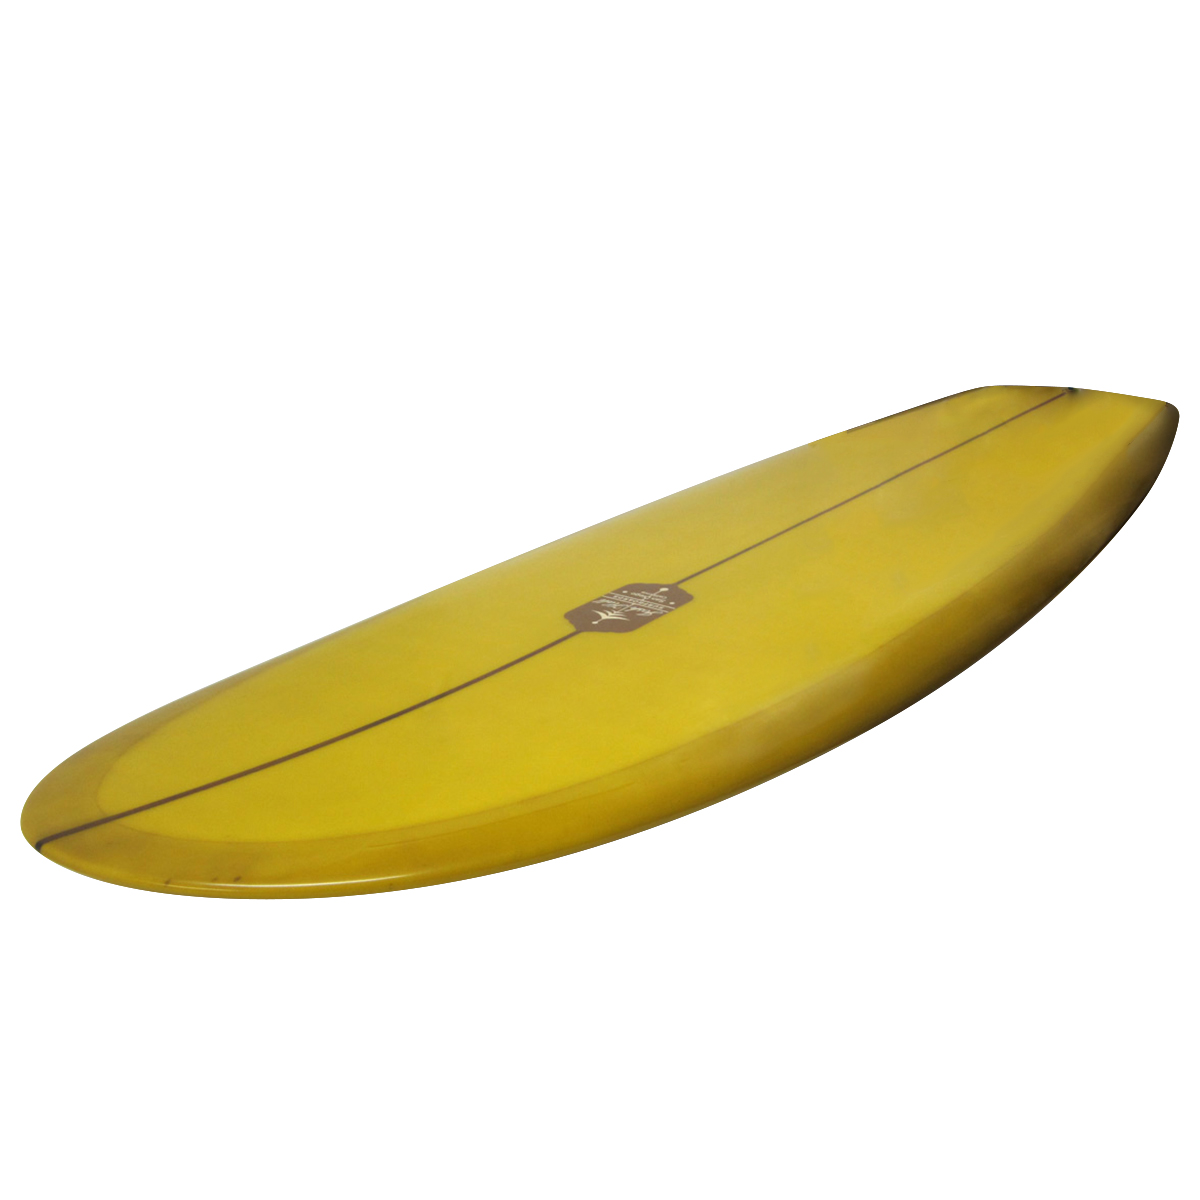 Josh Hall Surfboards / PESCADO HINCHADO VELO